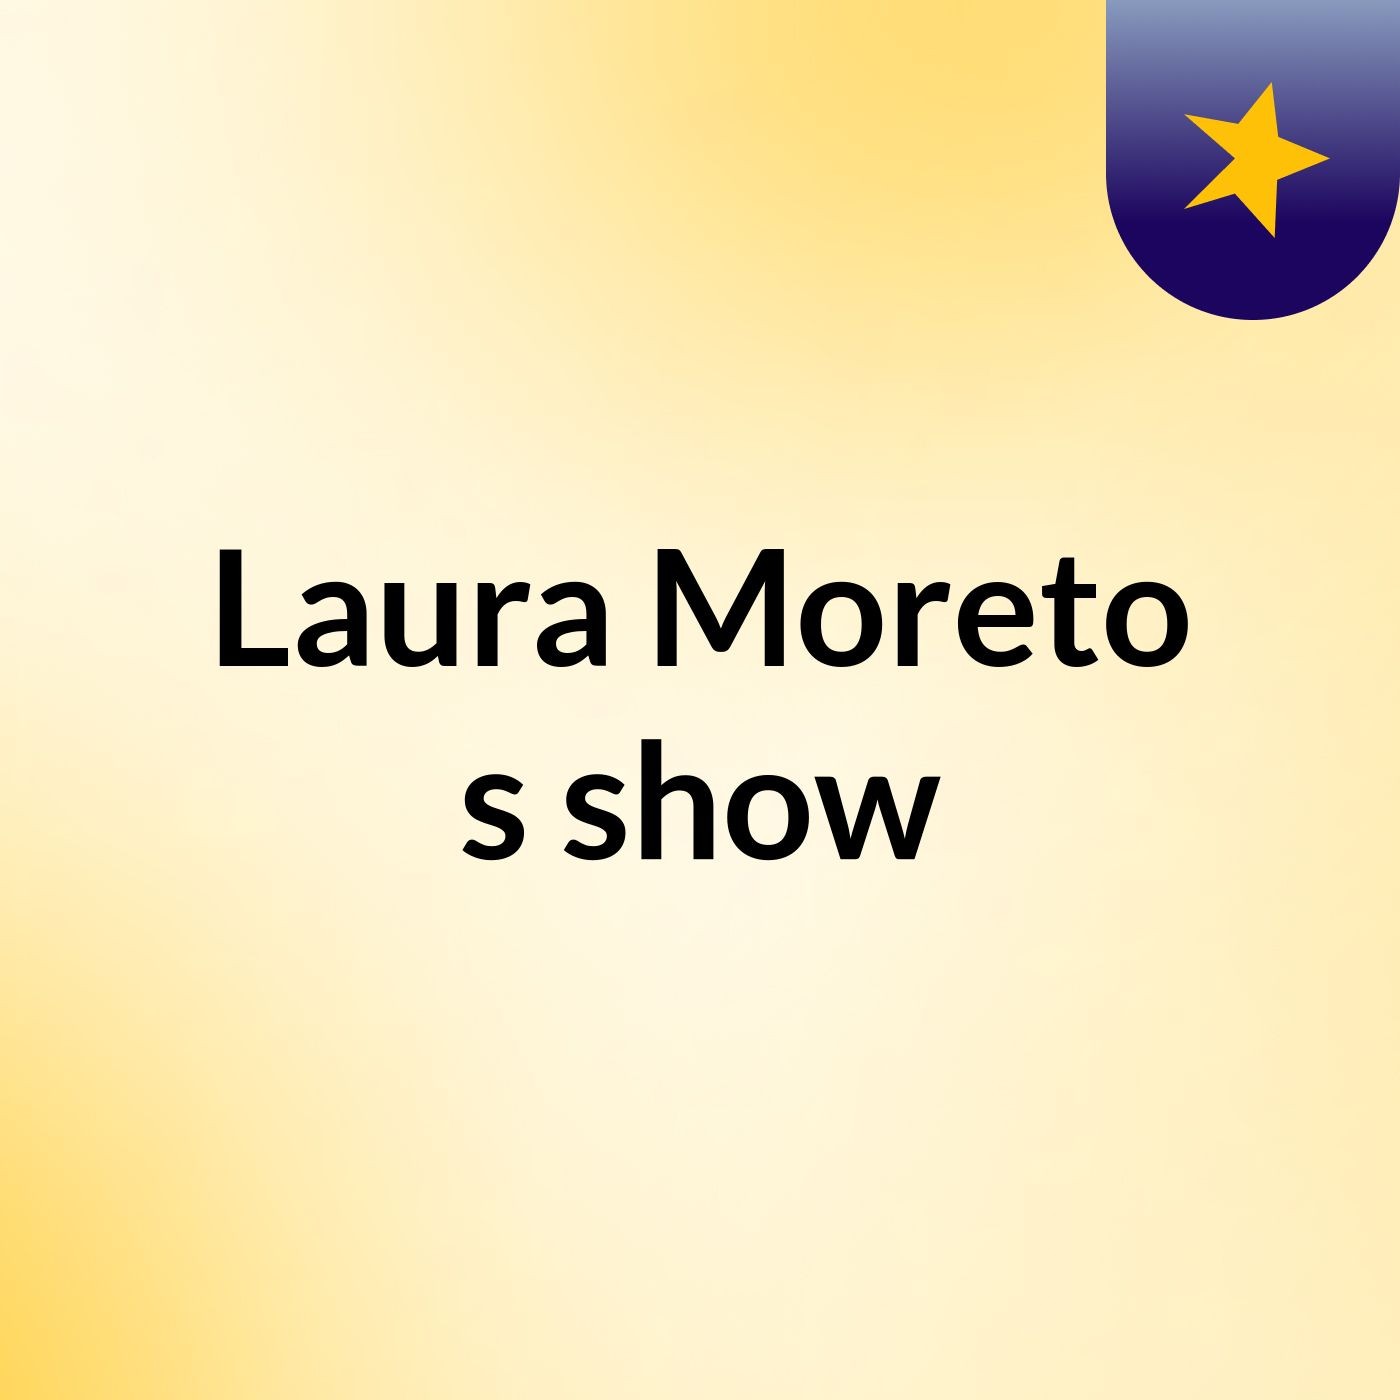 Laura Moreto's show